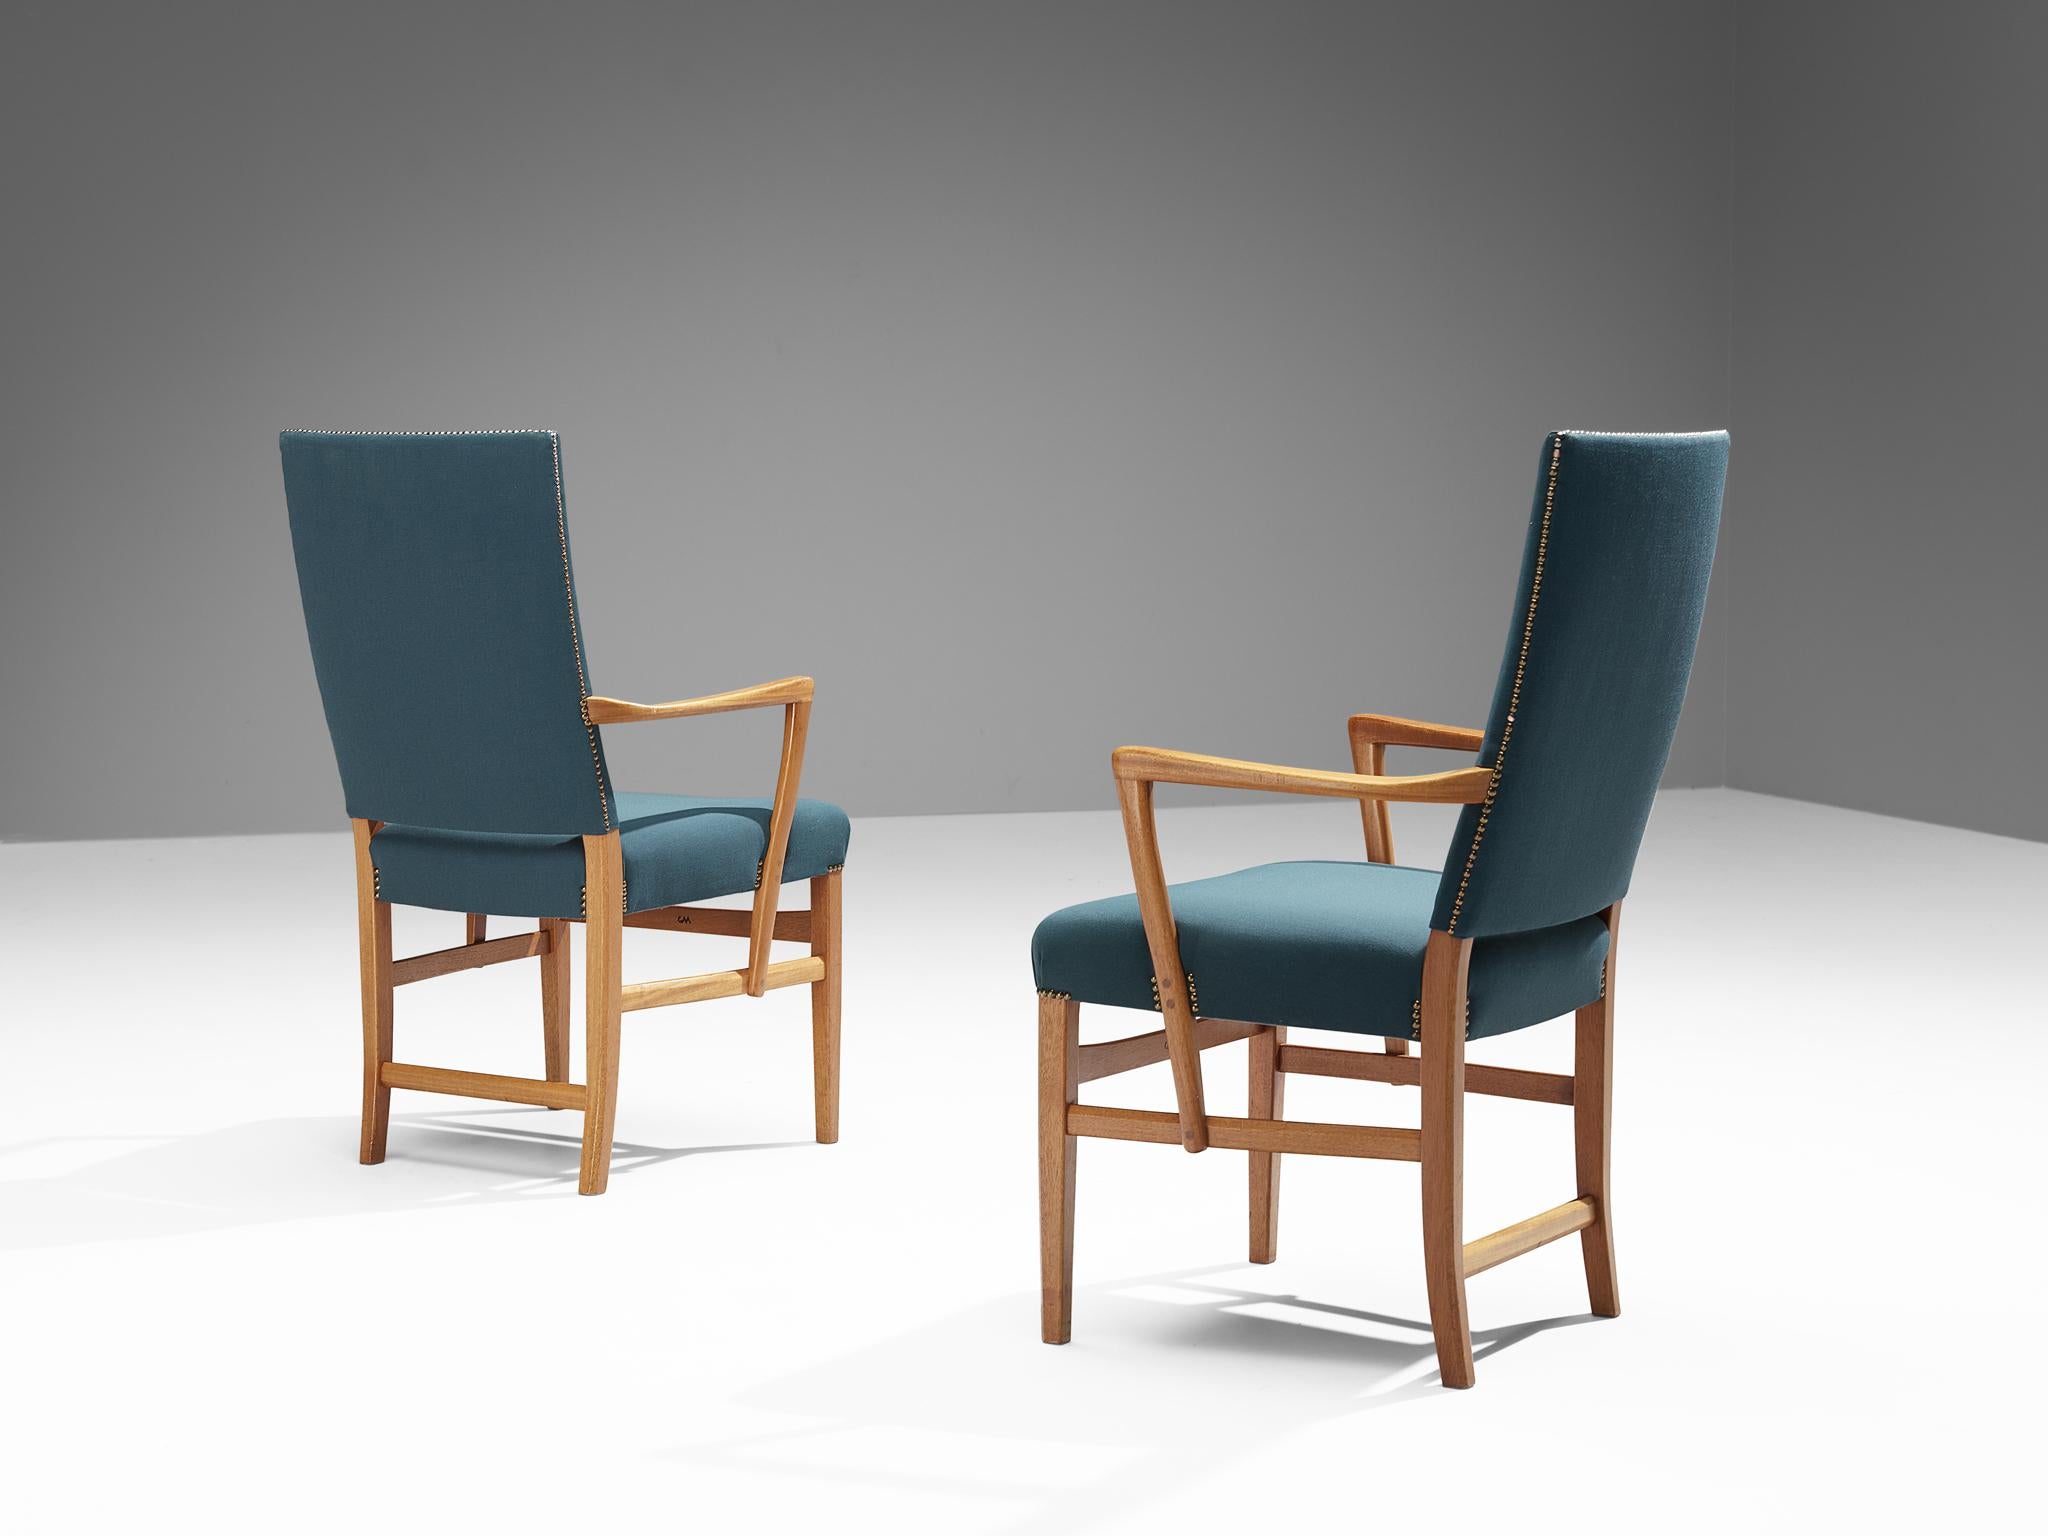 Carl Malmsten, Paar Esszimmerstühle, Teak, Stoff, Messing, Schweden, um 1970

Diese Sessel mit hoher Rückenlehne wurden von dem schwedischen Designer Carl Malmsten (1888-1972) entworfen. Diese eleganten Sessel sind ein Paradebeispiel für die